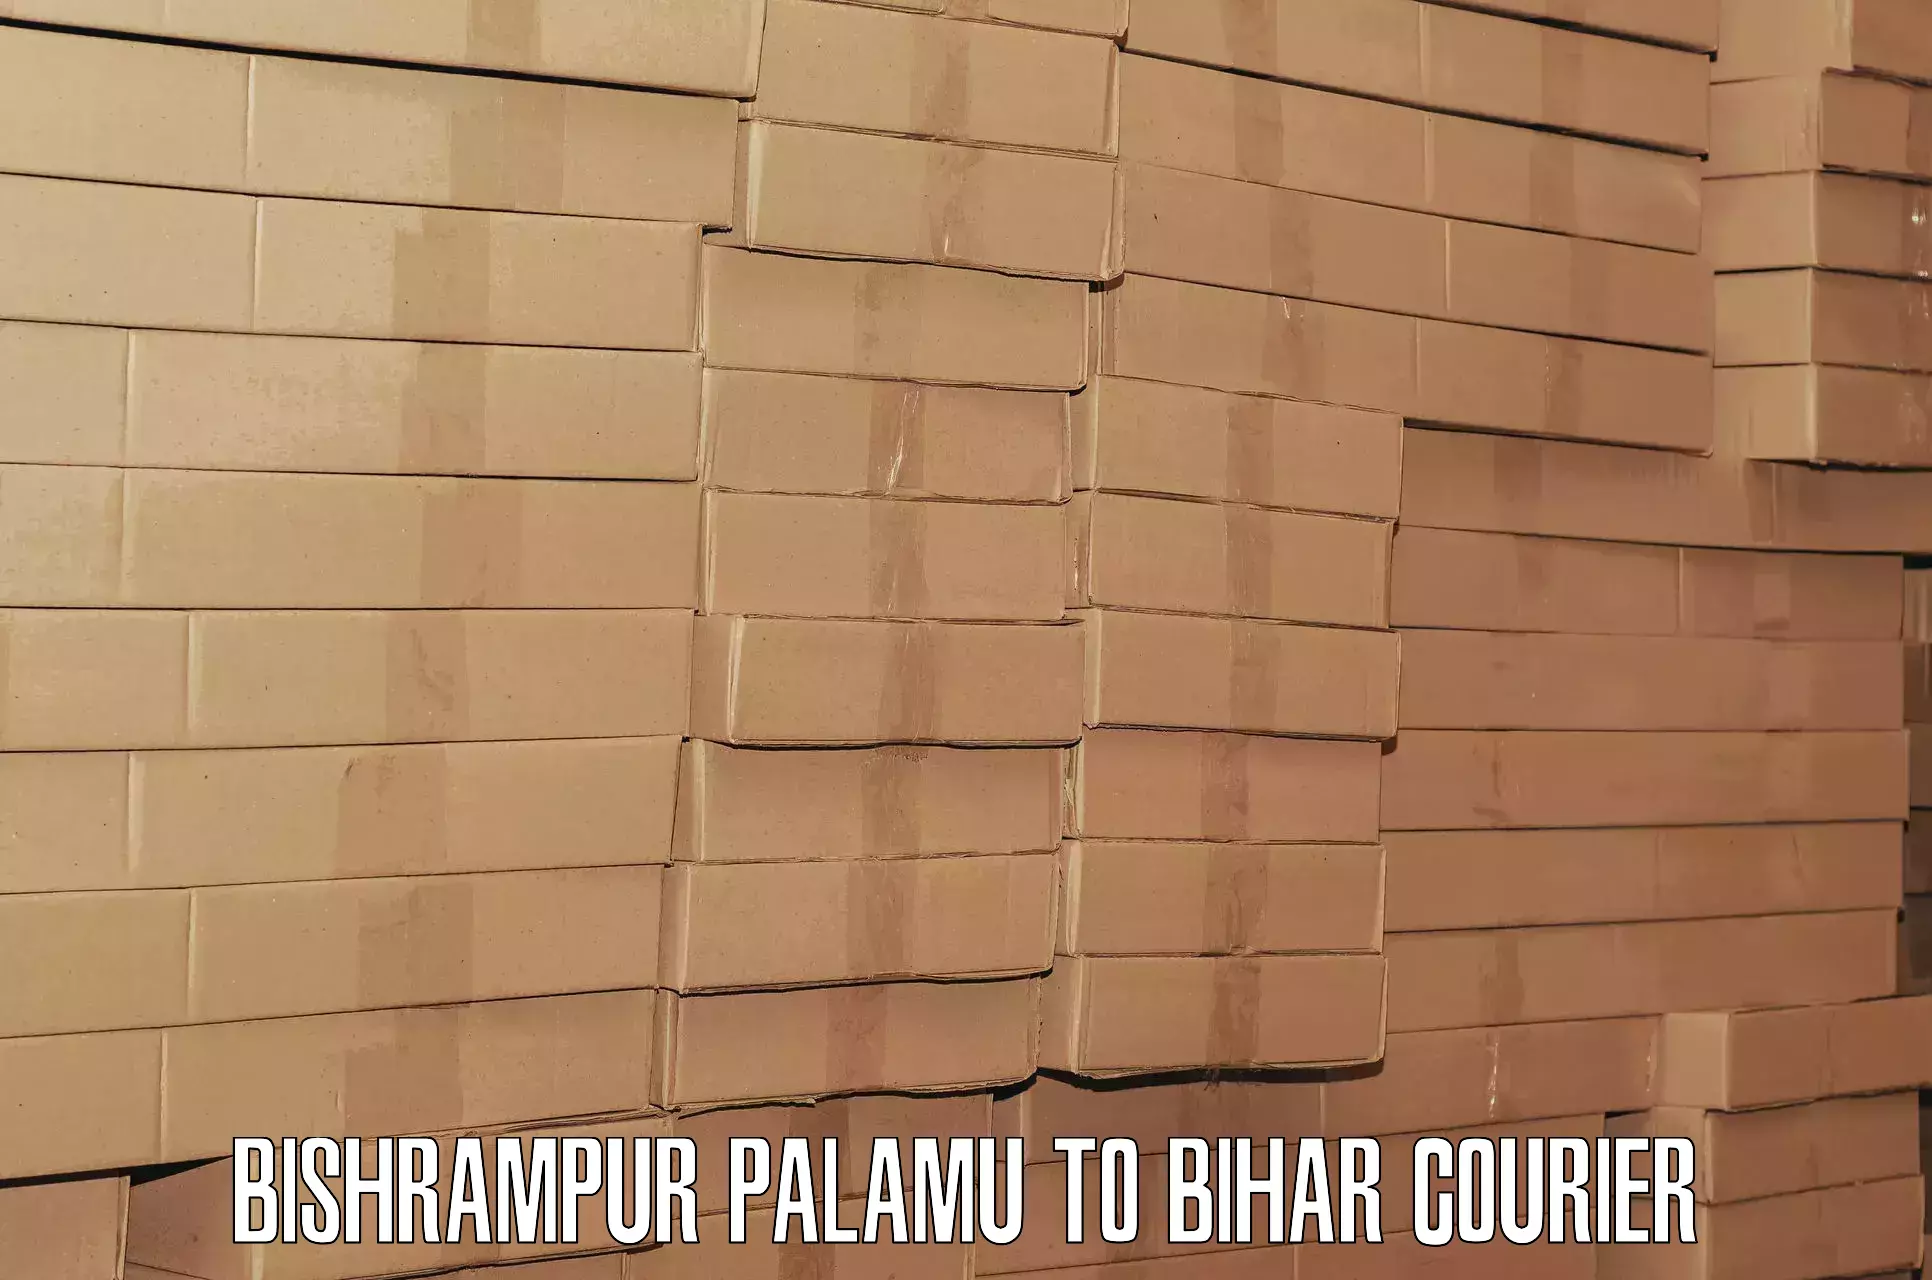 Baggage courier guide Bishrampur Palamu to Kamtaul